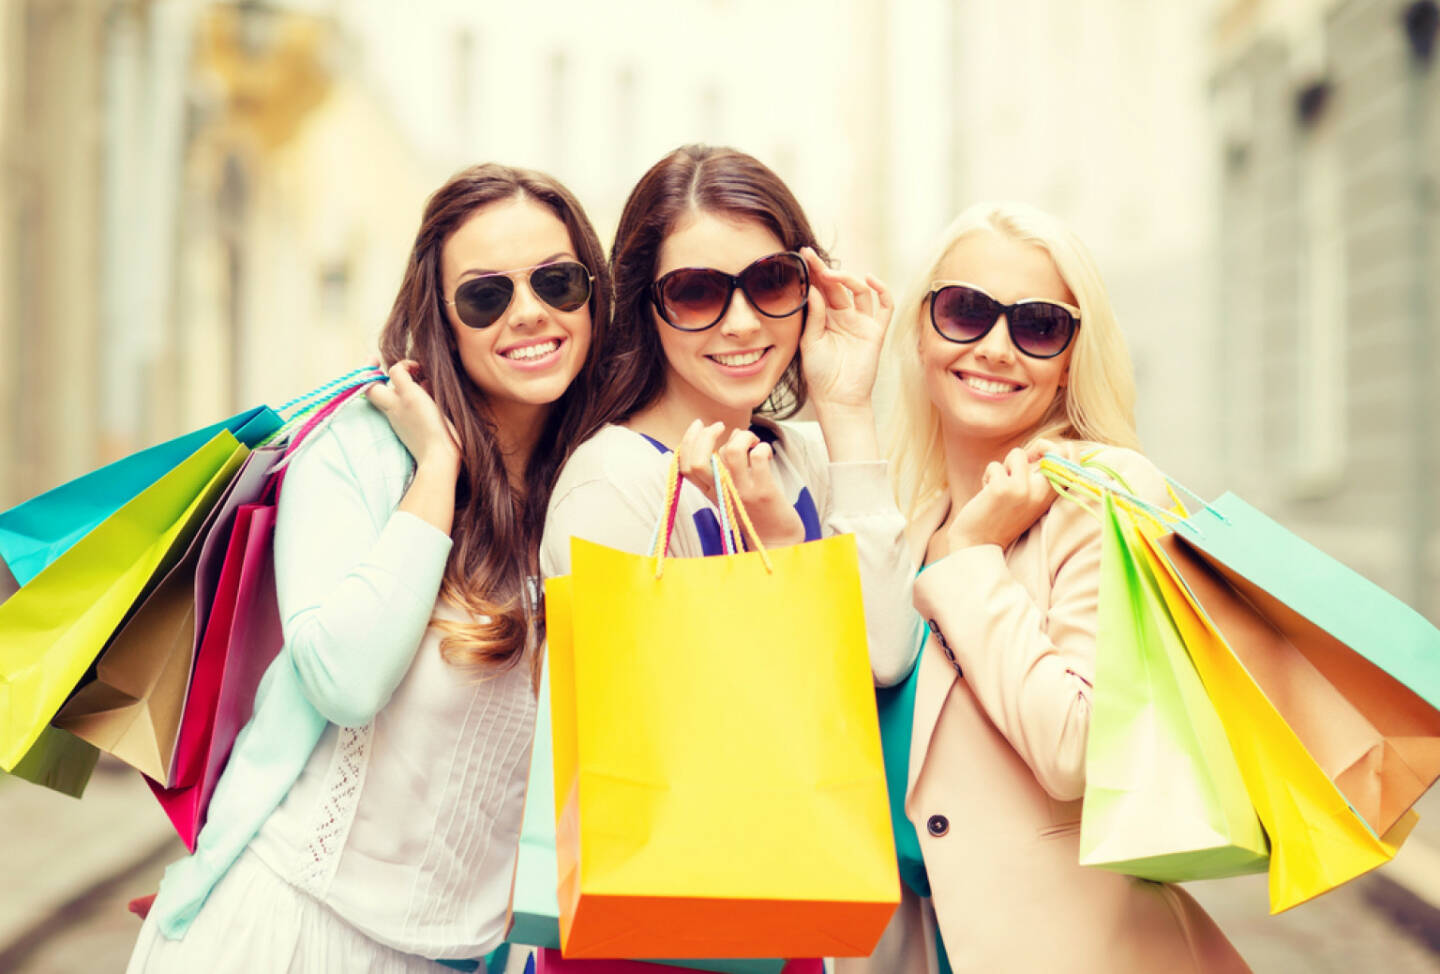 Shopping, Verbraucher, Konsum, Schlussverkauf, Sale, kaufen, einkaufen, ausgeben, http://www.shutterstock.com/de/pic-191344820/stock-photo-shopping-sale-happy-people-and-tourism-concept-three-beautiful-girls-in-sunglasses-with.html